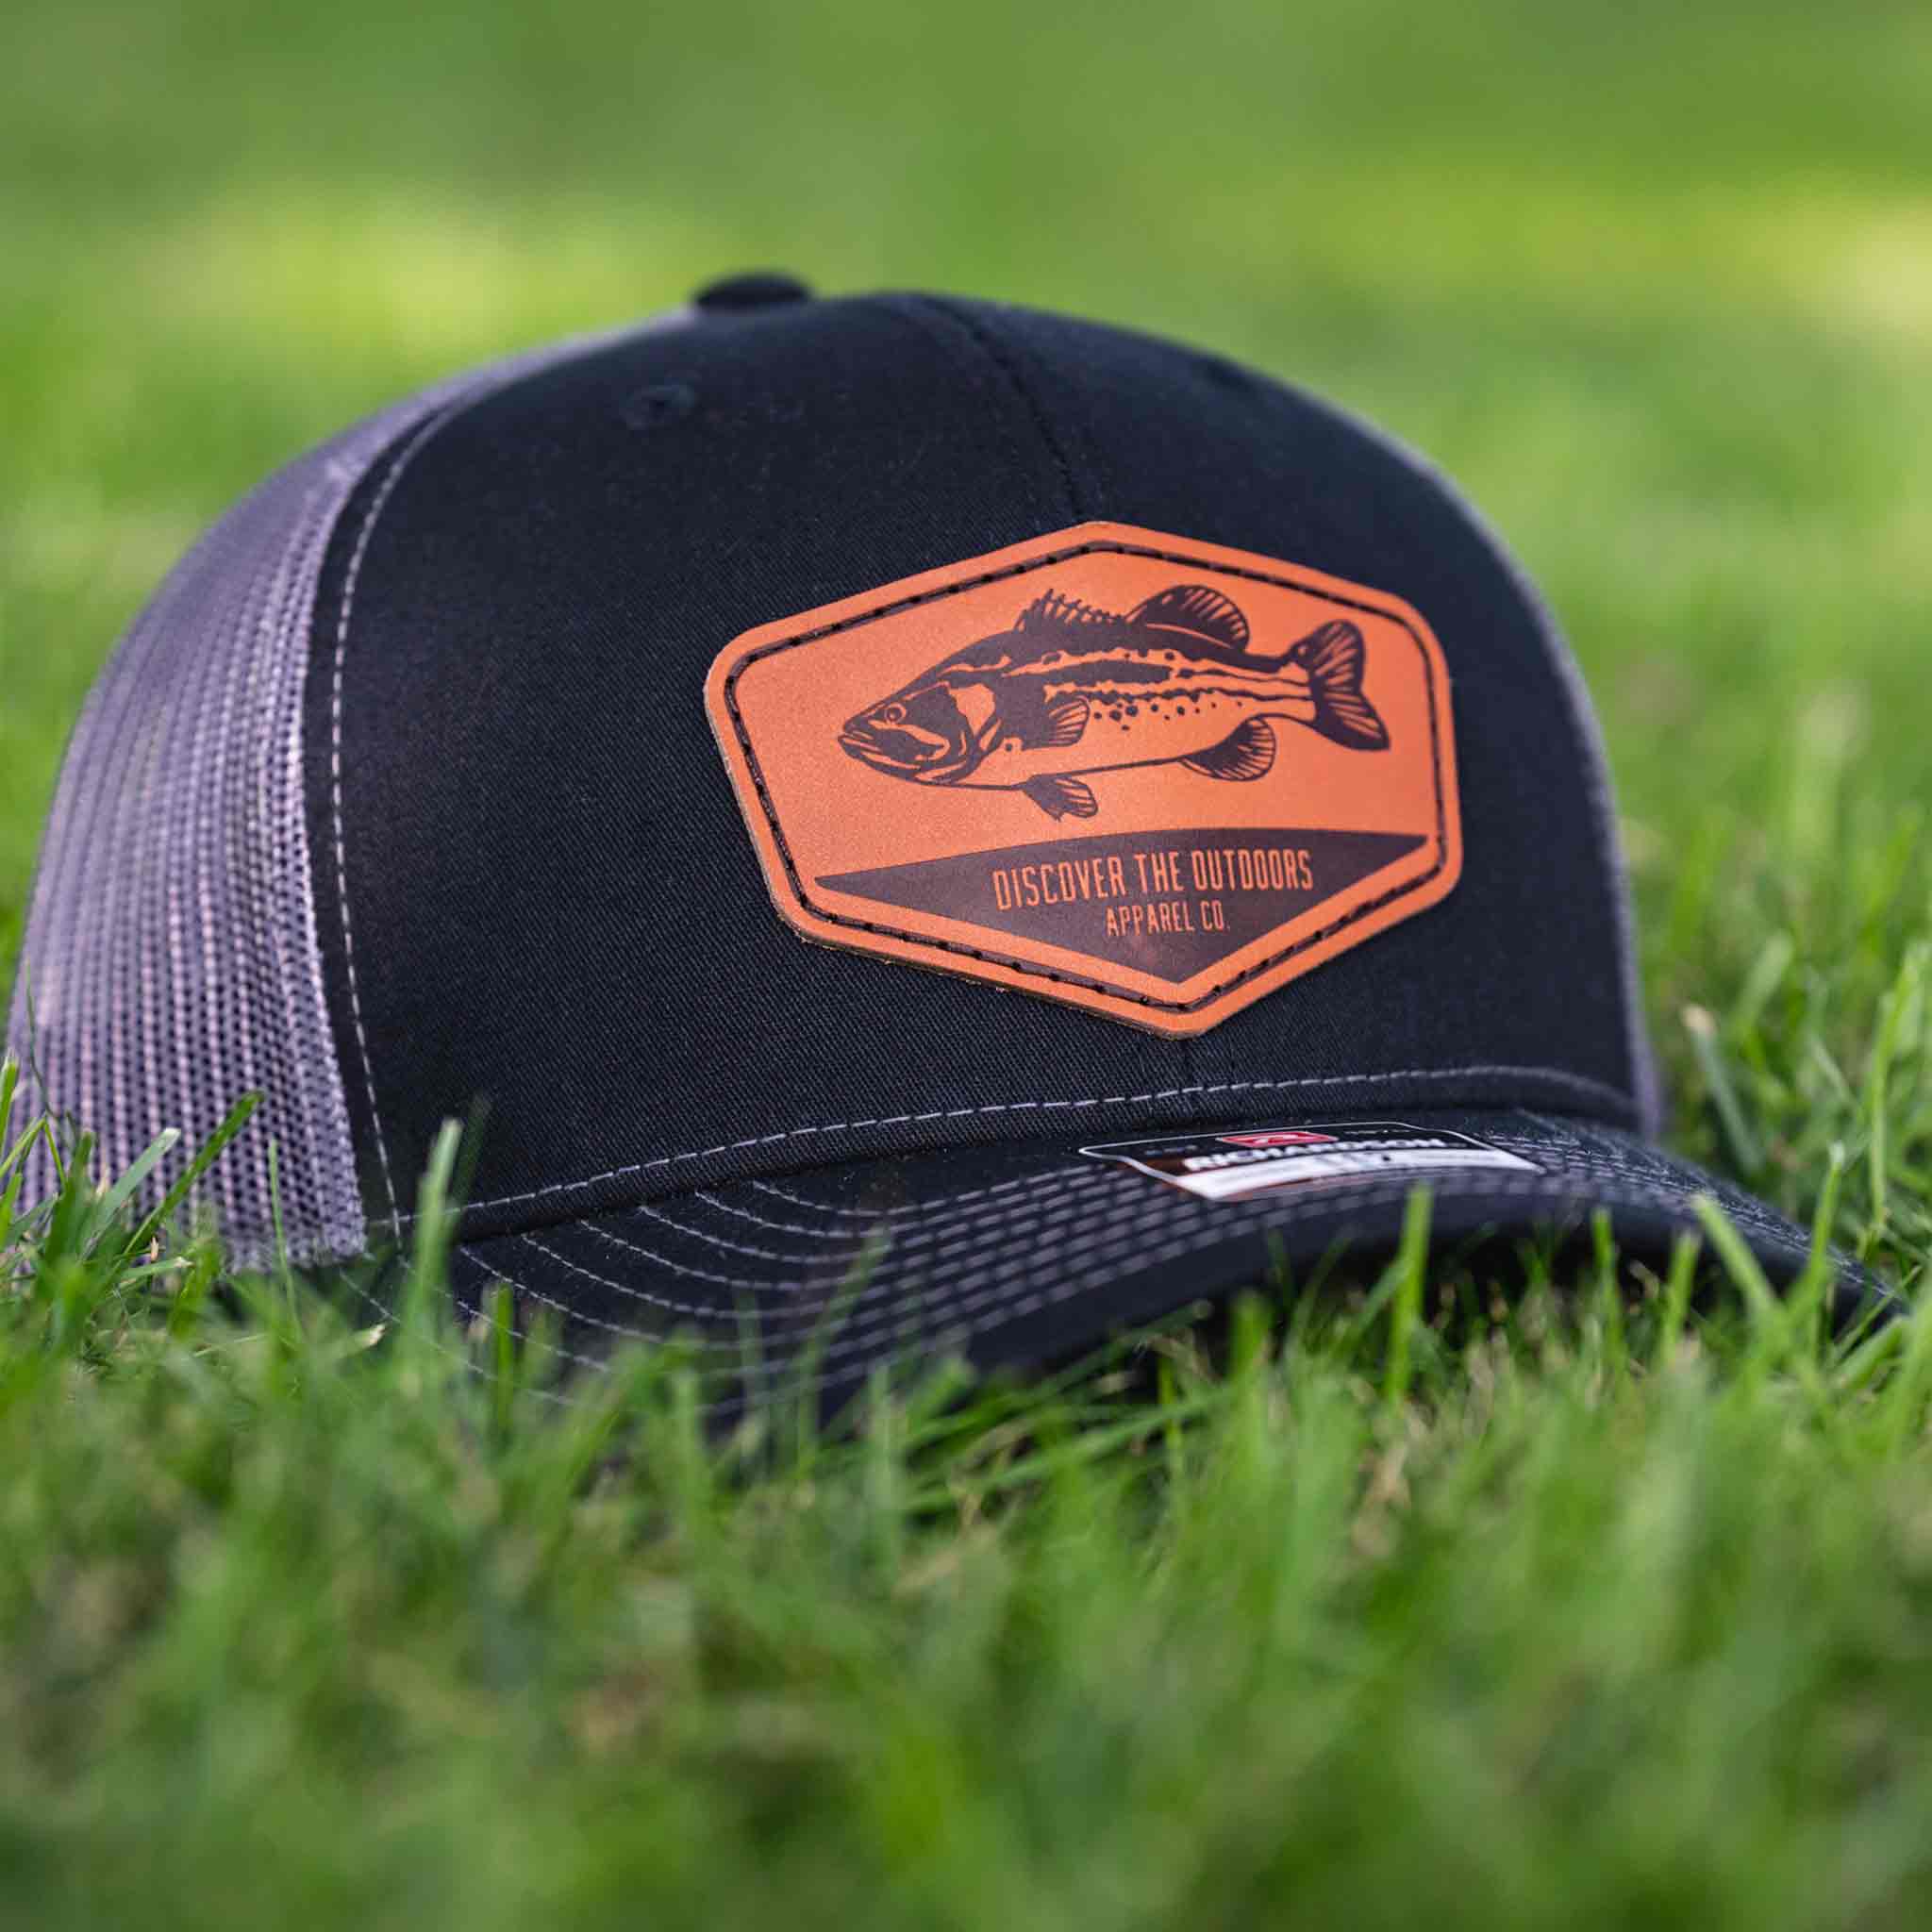 Men's Fishing Cap Outdoor Bass Fisherman Trucker Hat, Black